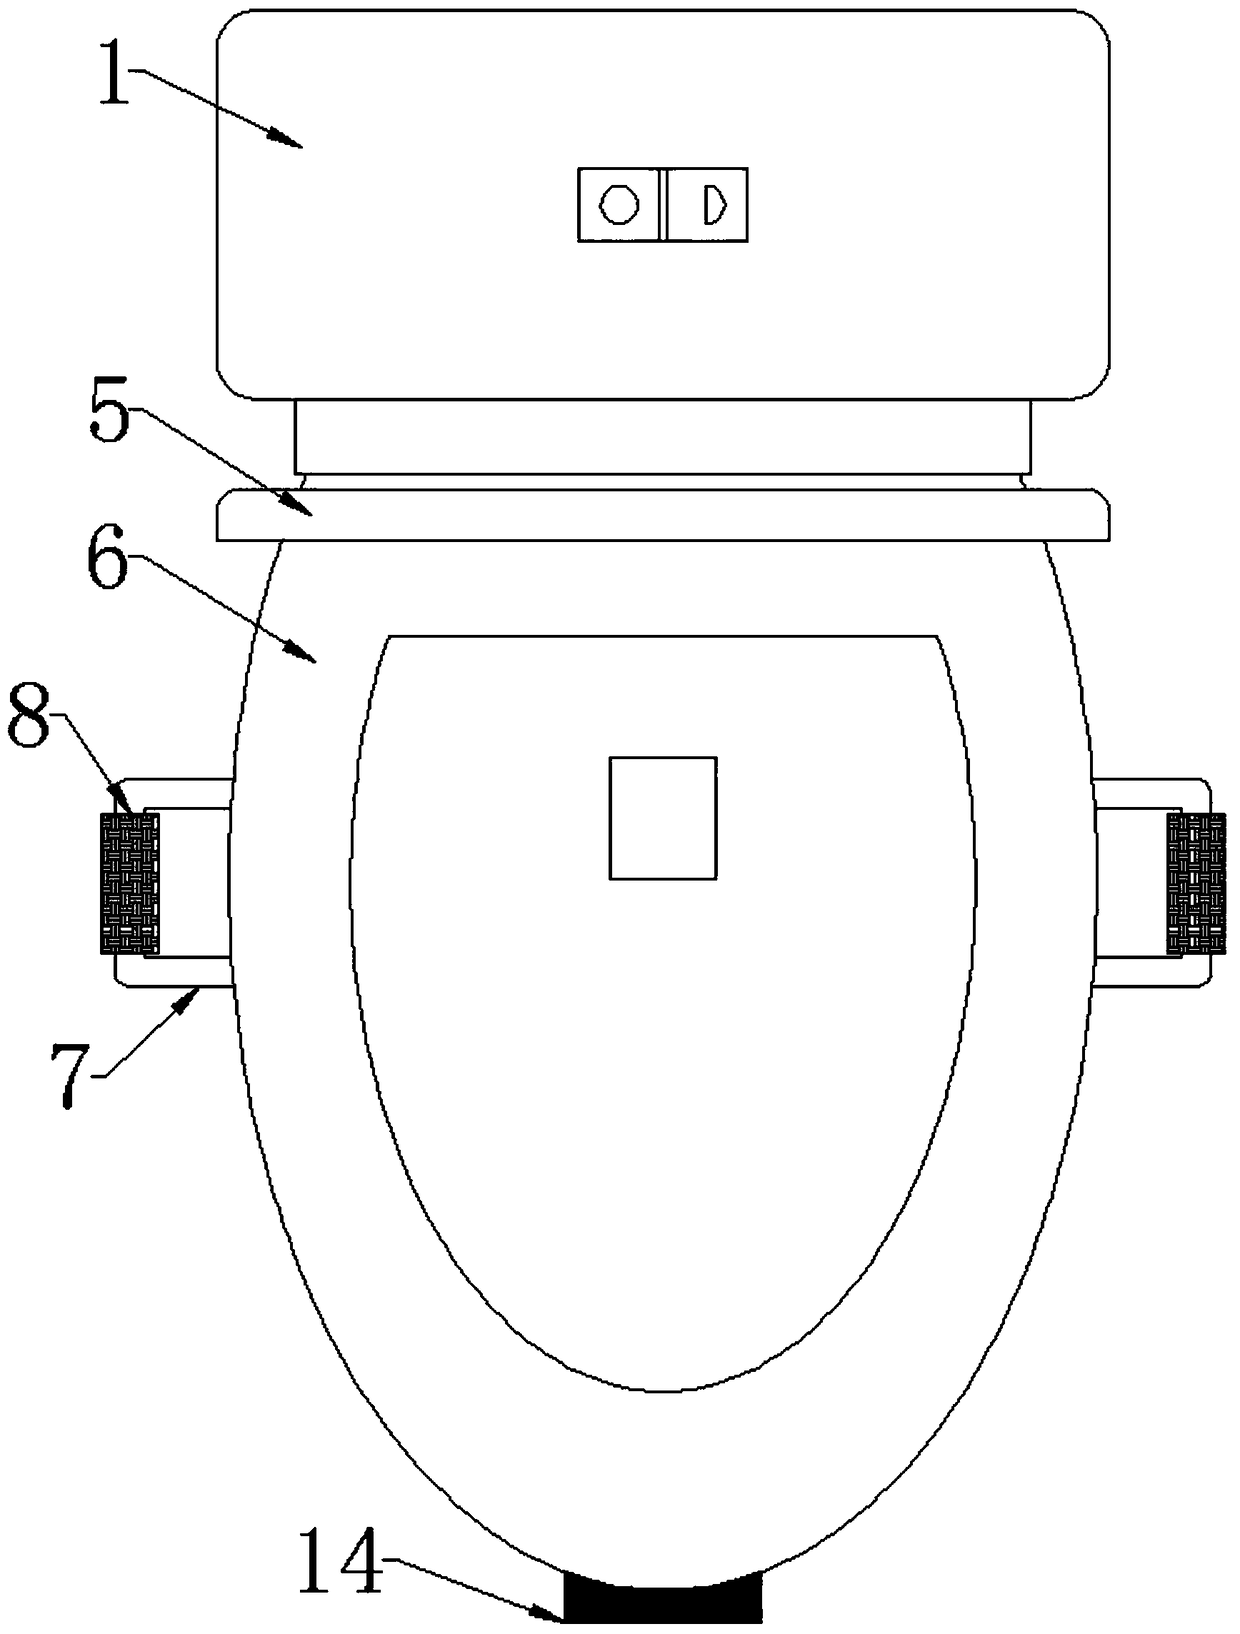 Pedal-type toilet